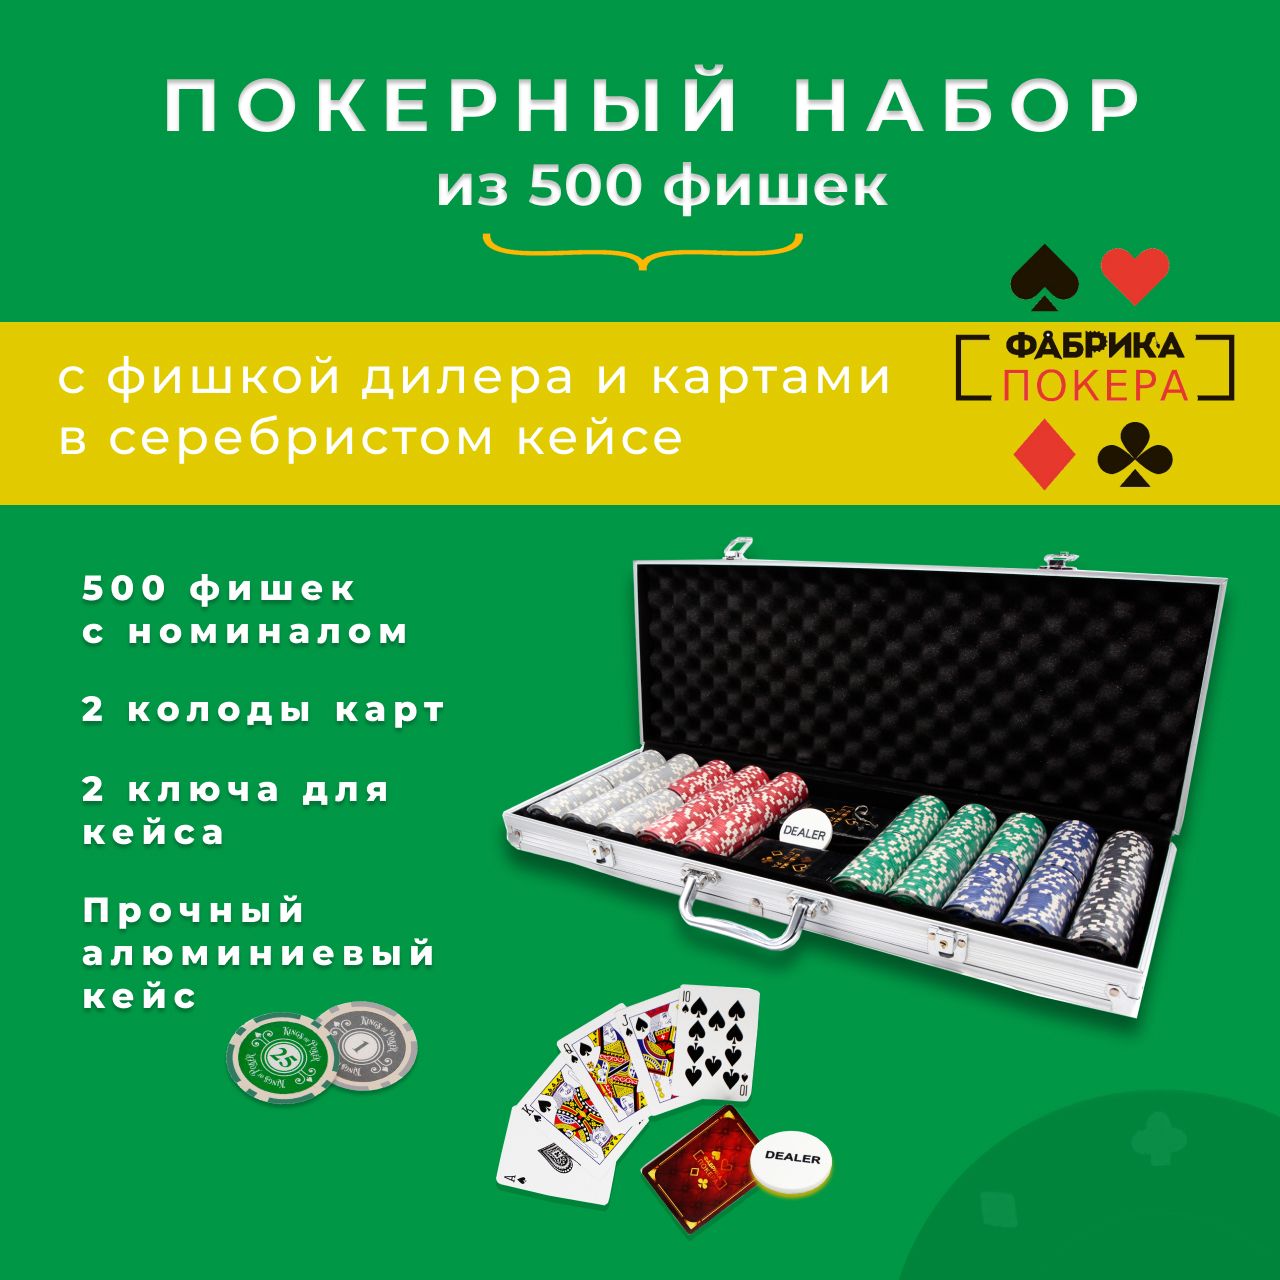 Суши фишка северодвинск. Набор для покера 500 фишек. Фабрика покера карты. Размер фишки для покера. Как хранить фишки.